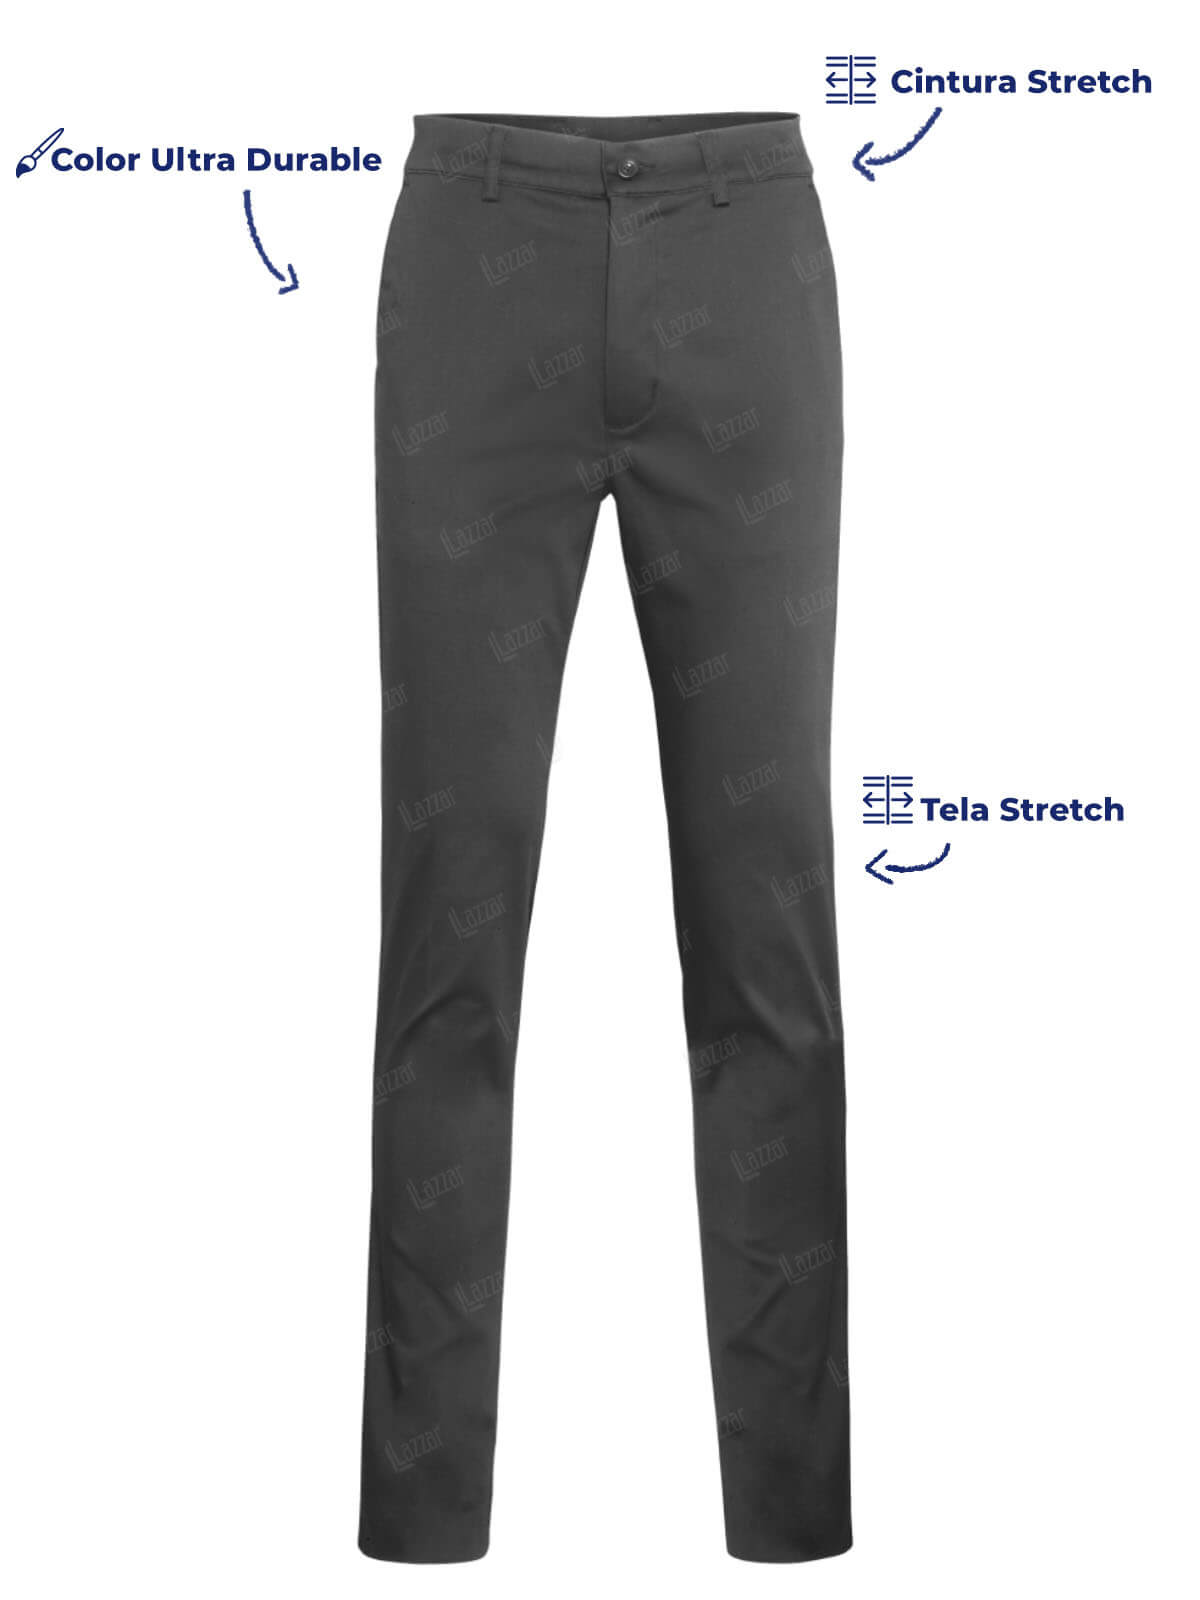 Pantalon Empresarial color gris